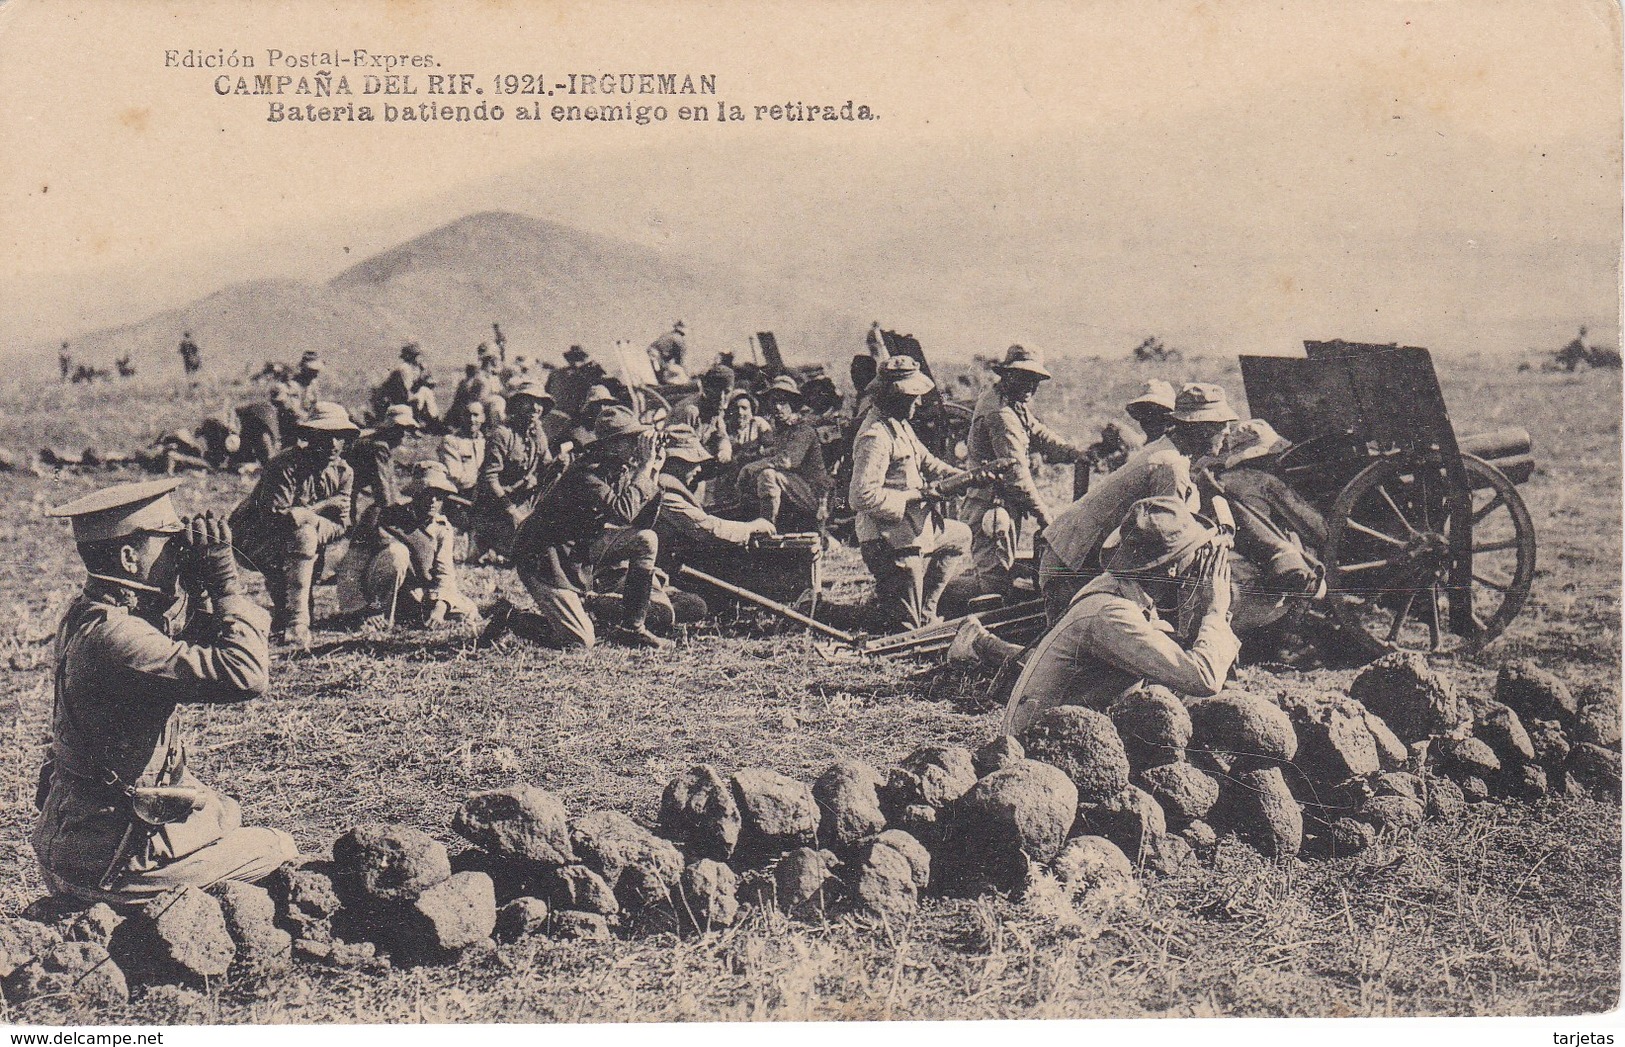 POSTAL DE LA CAMPAÑA DEL RIF DEL AÑO 1921 - IRGUEMAN - BATERIA BATIENDO AL ENEMIGO EN LA RETIRADA (MARRUECOS) - Otras Guerras